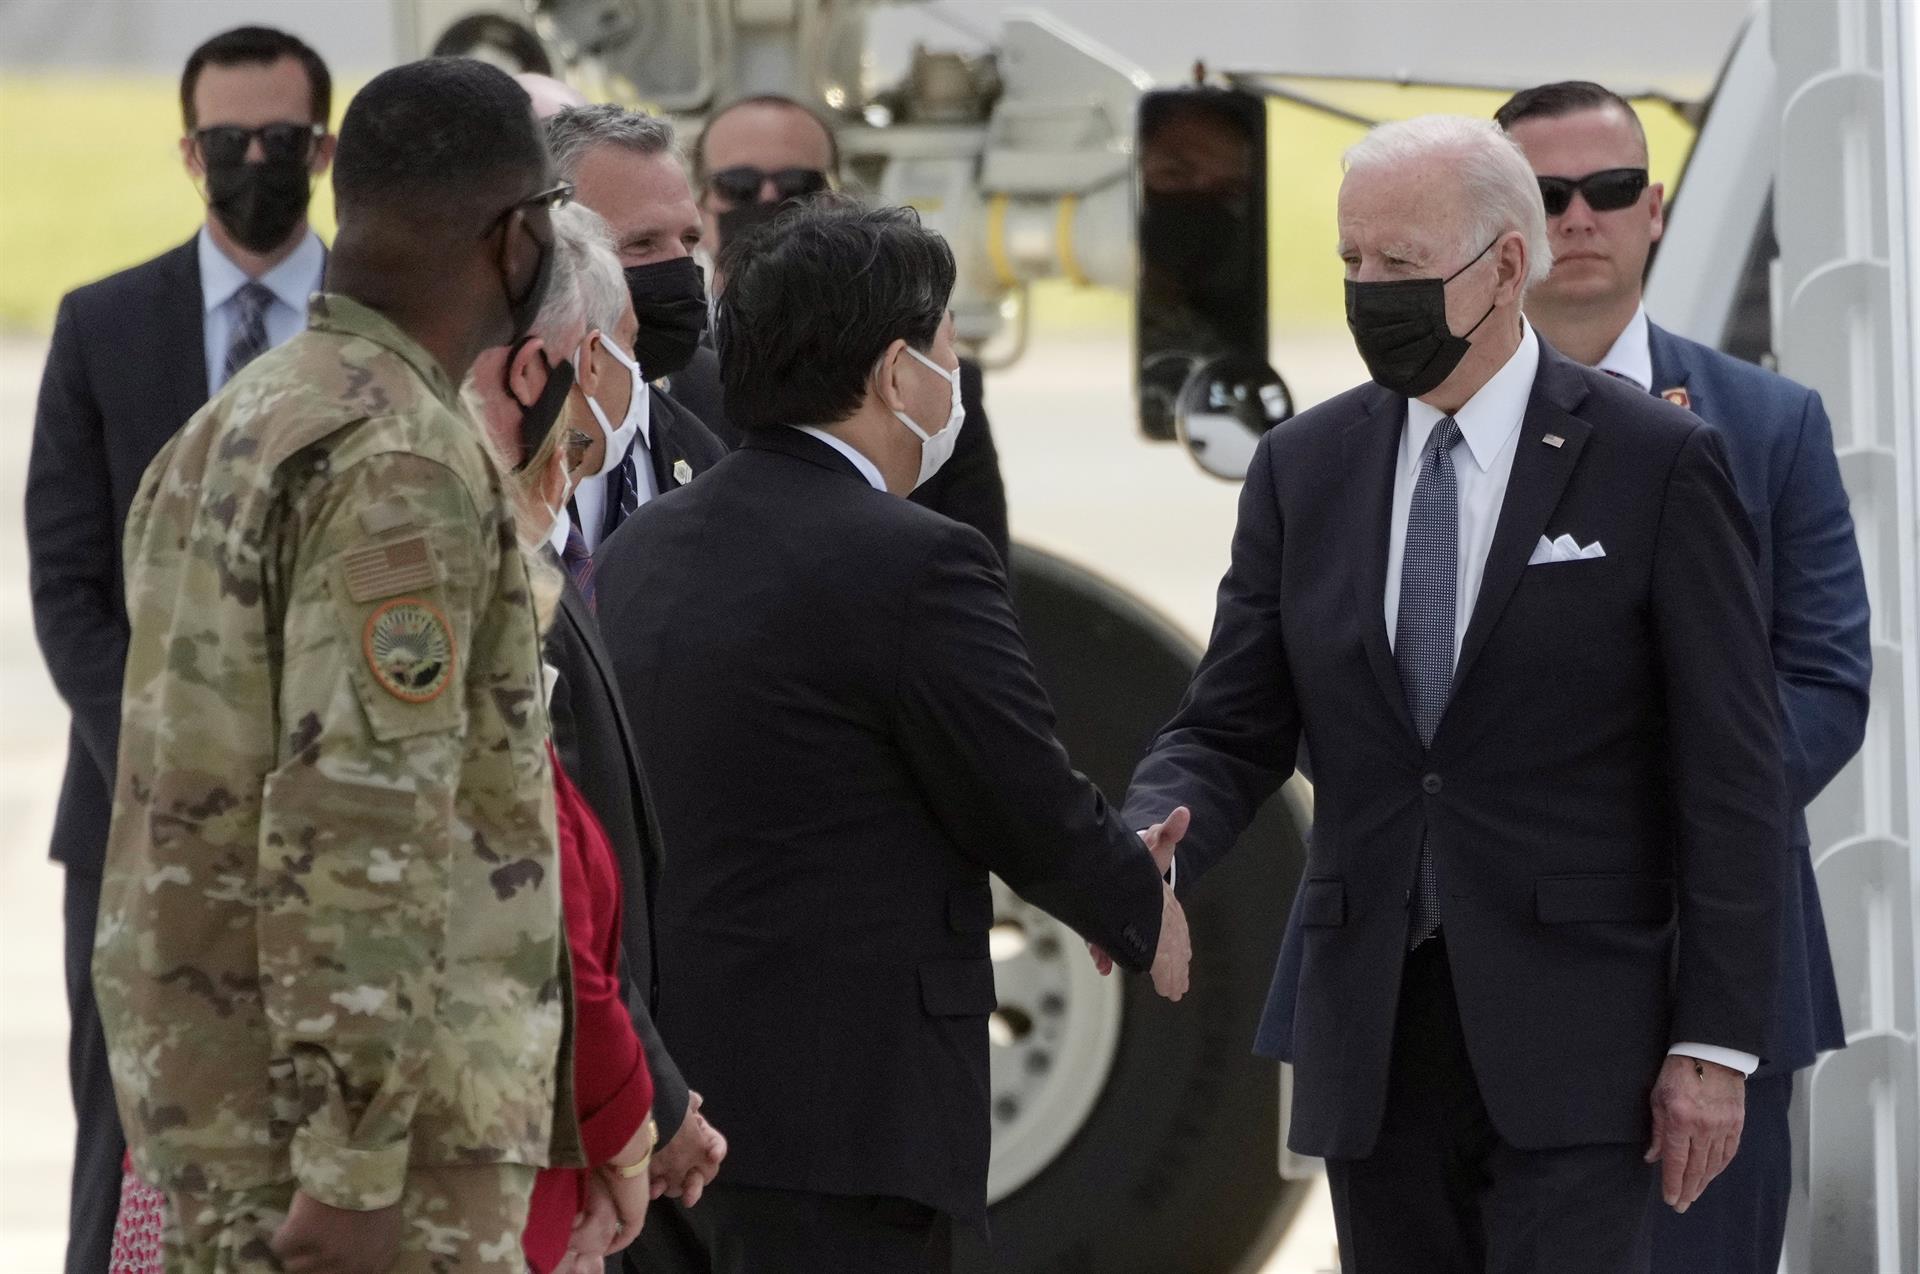 Biden continúa en Japón su gira centrada en reforzar alianzas frente a China